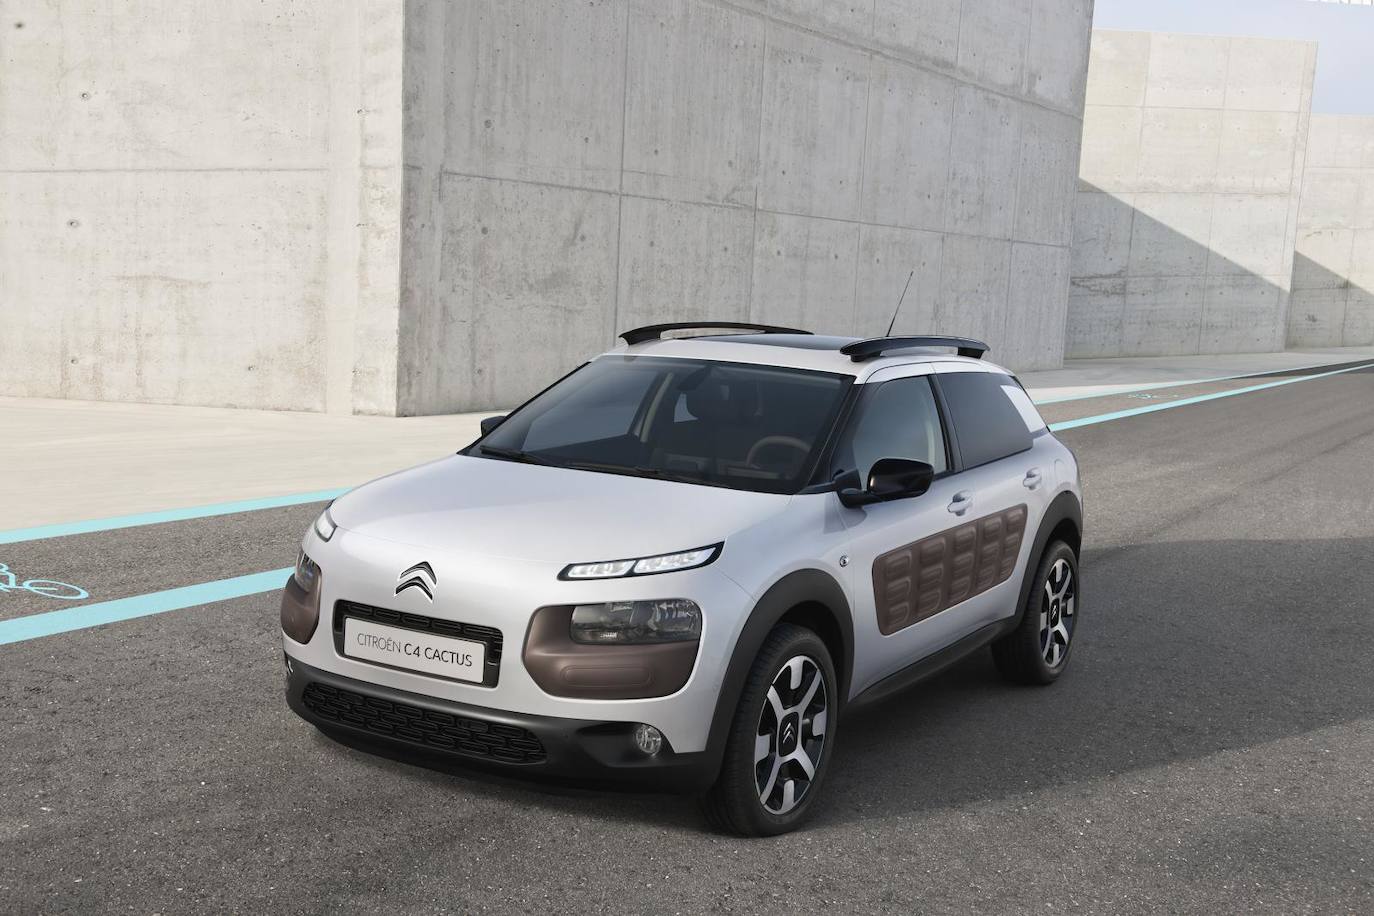 Fotogalería: Los Citroën fabricados en España